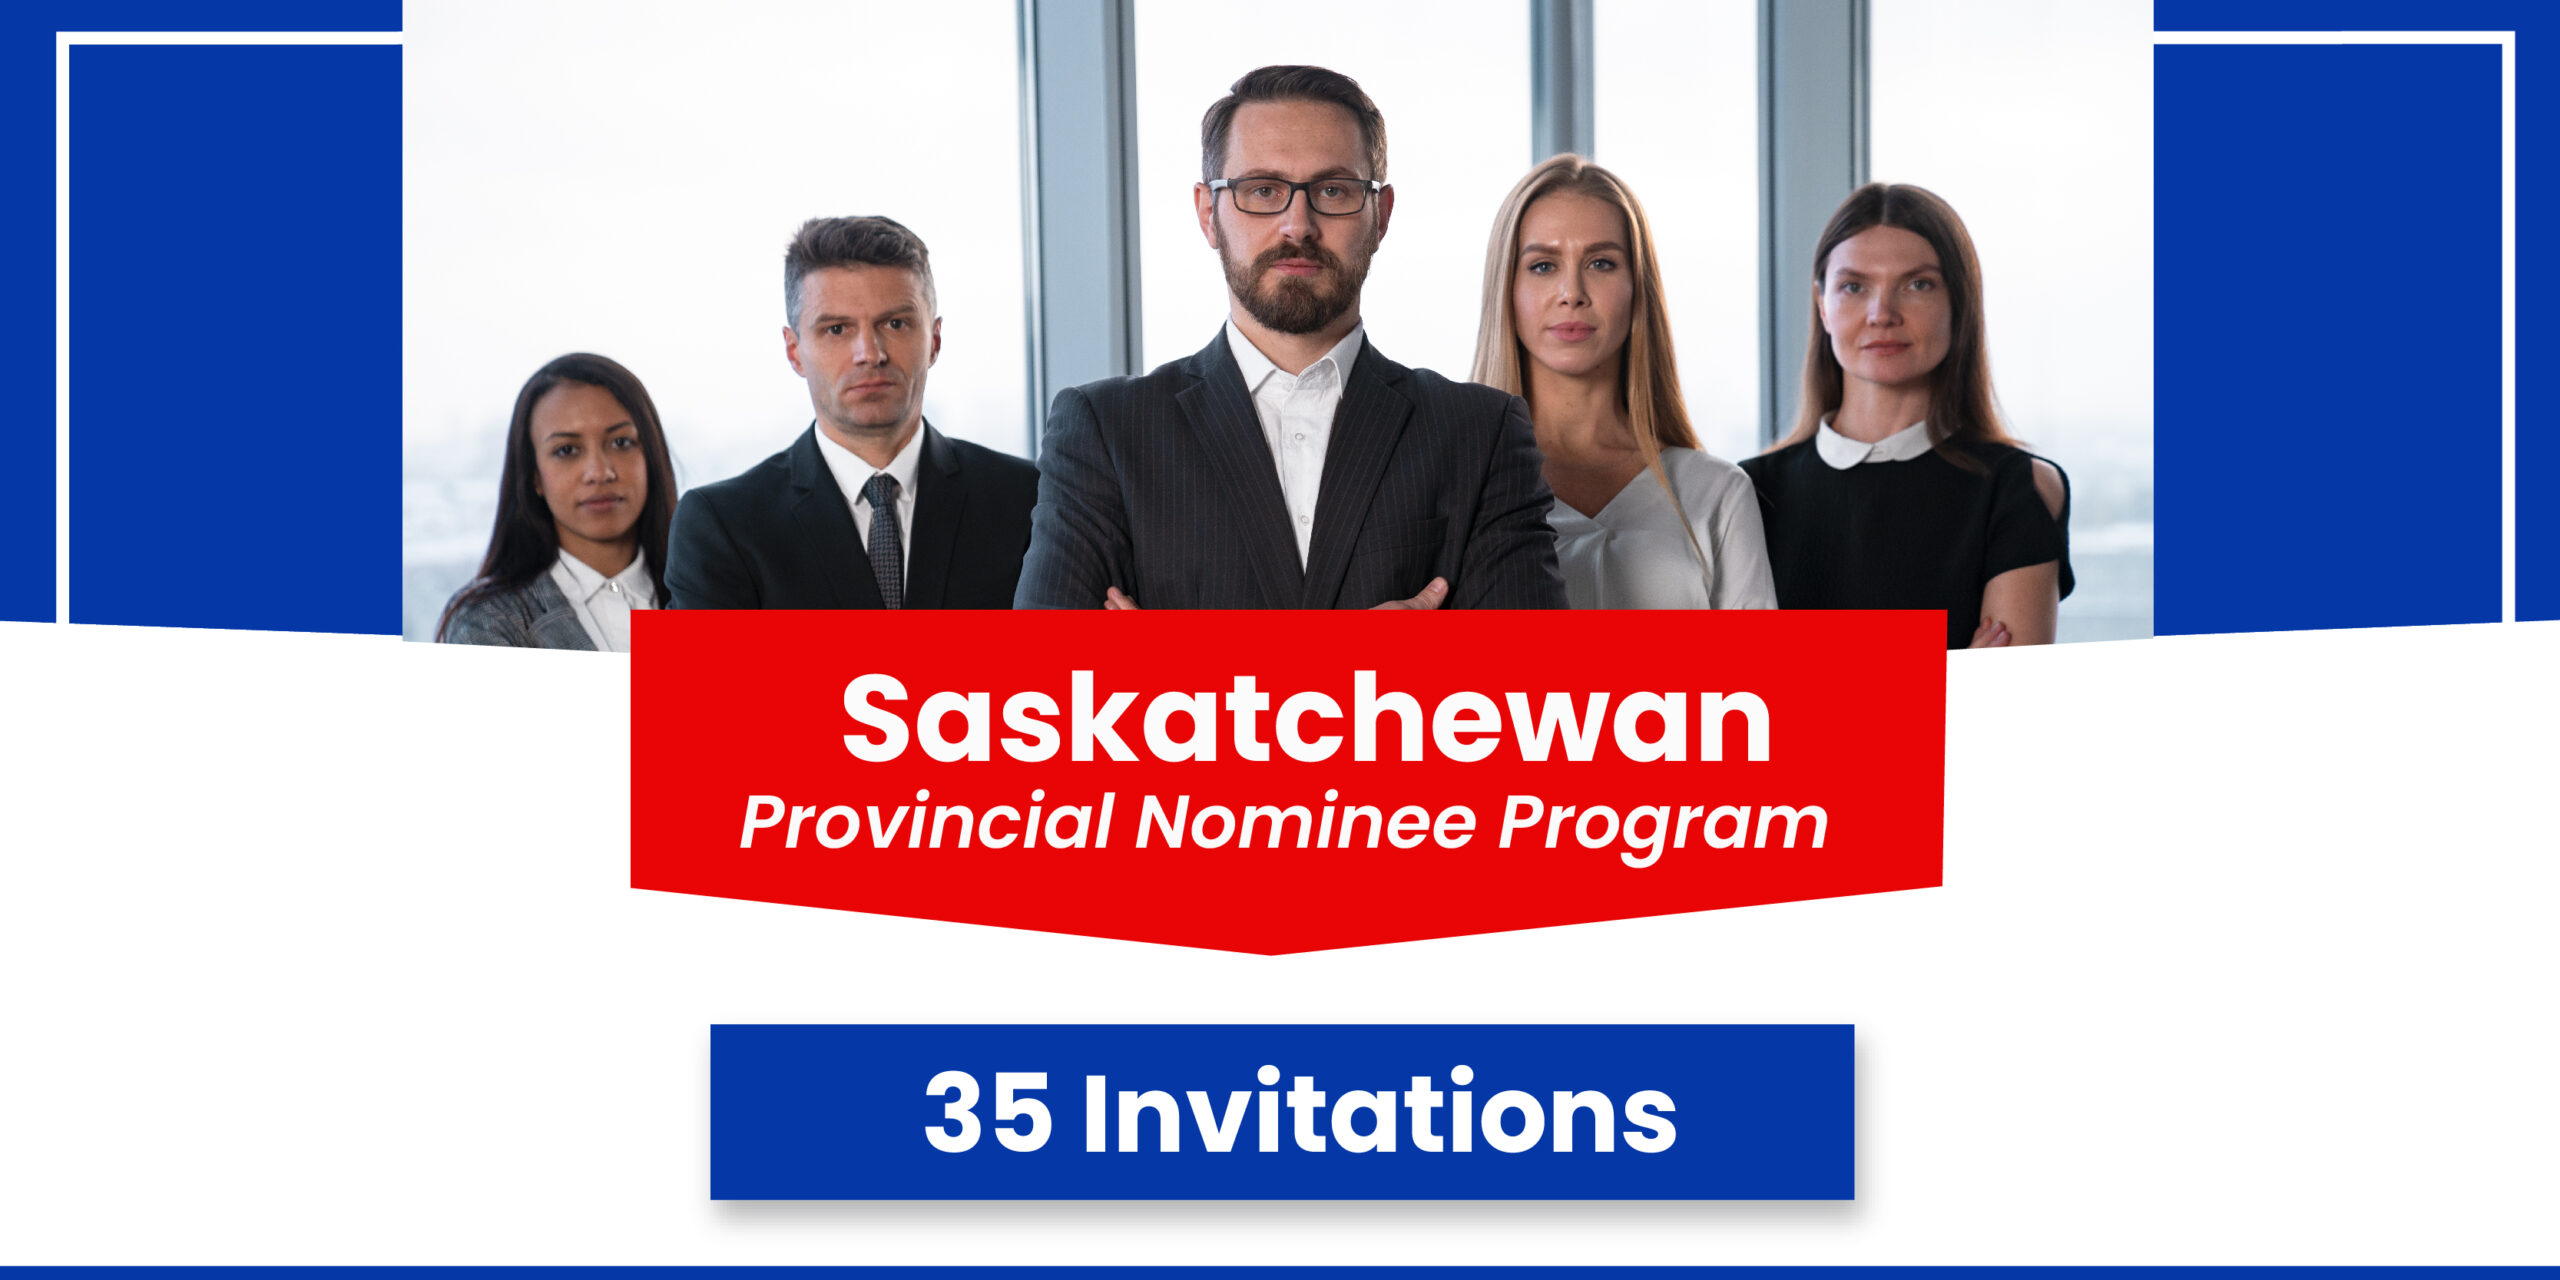 Saskatchewan PNP Draw Issues 35 PR Invitations